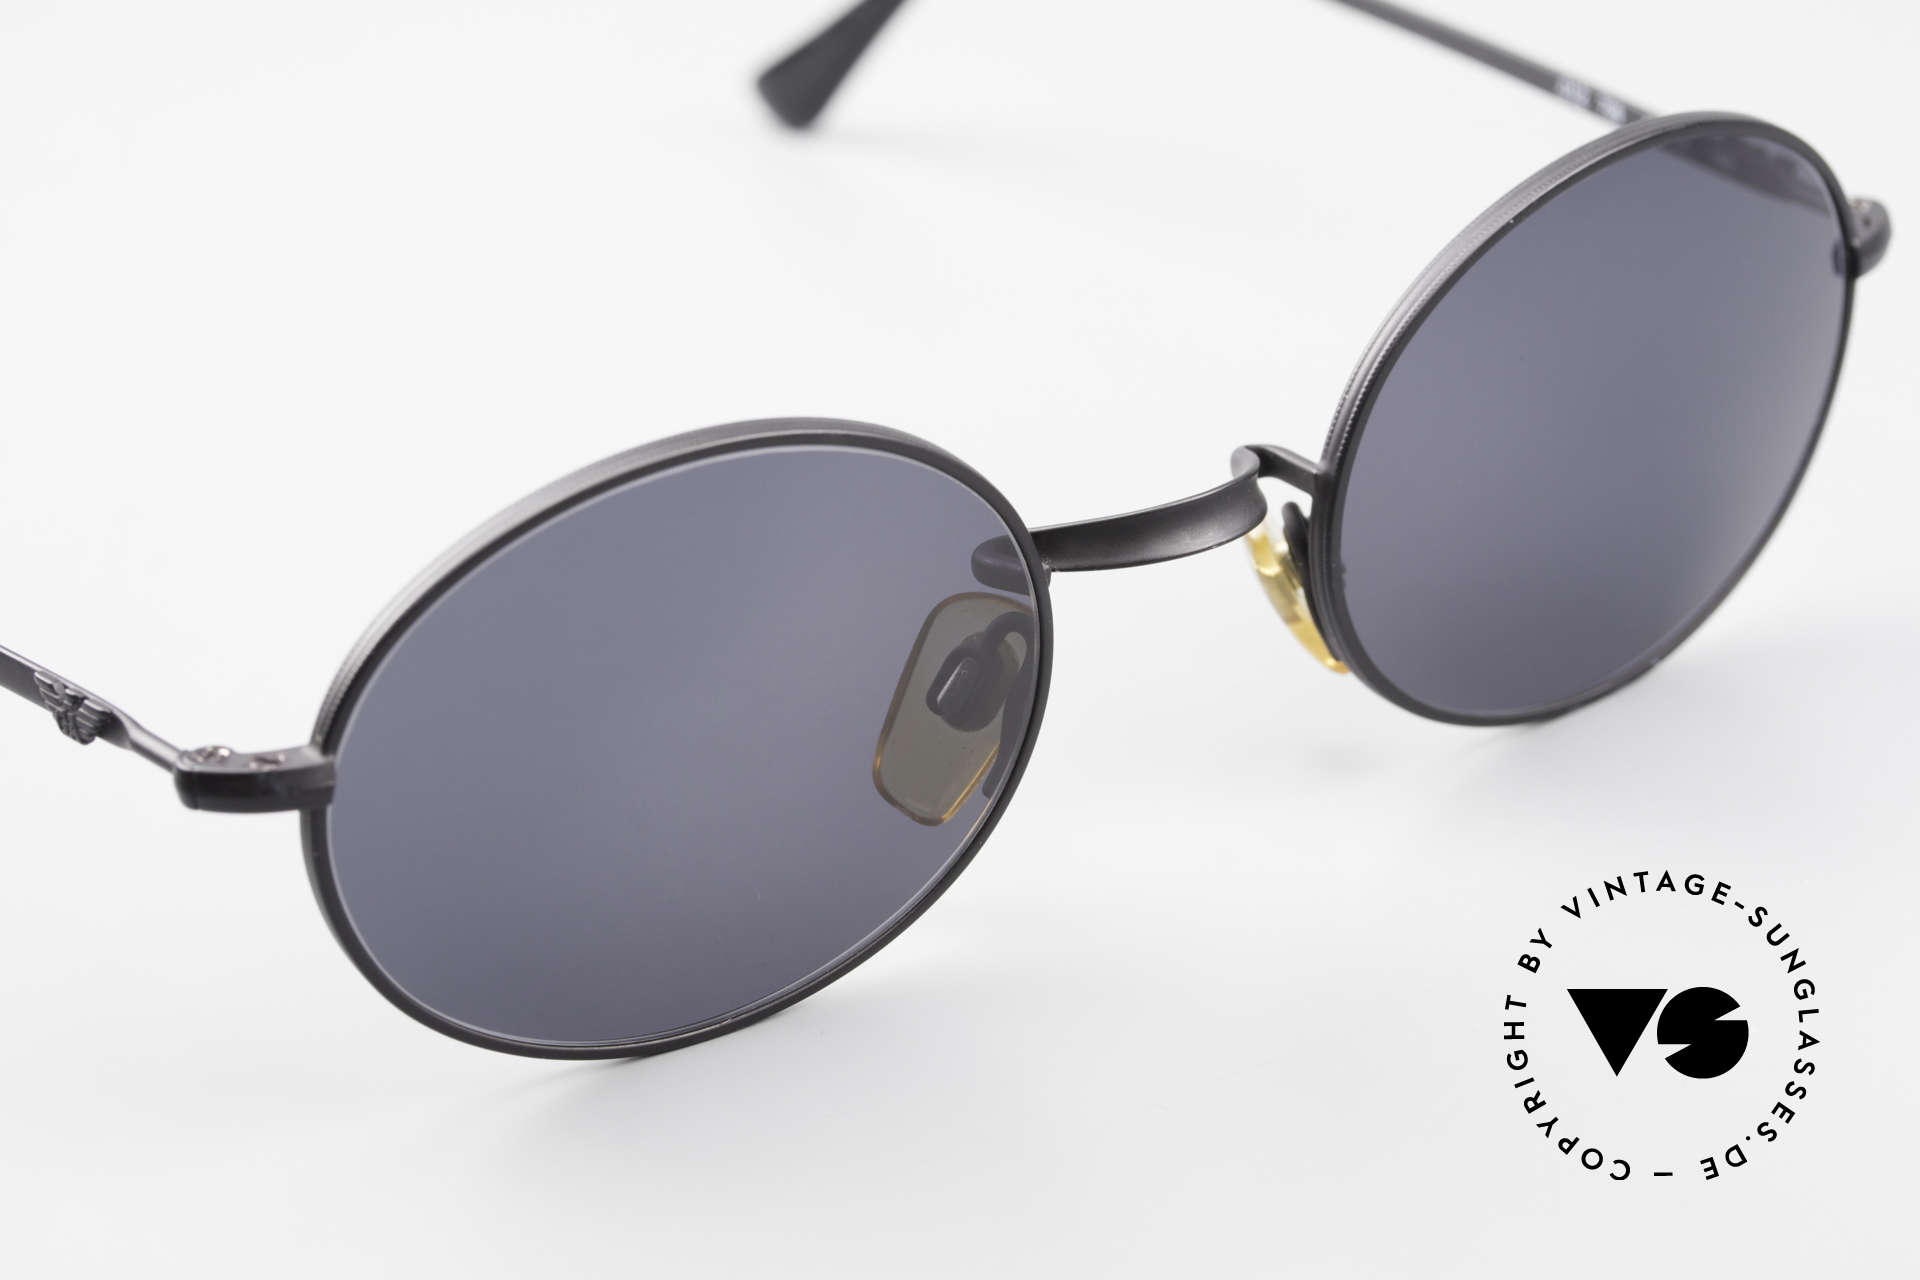 Giorgio Armani EA012 Ovale Vintage Sonnenbrille 90er, KEINE RETROBRILLE, sondern ein altes Original!, Passend für Herren und Damen